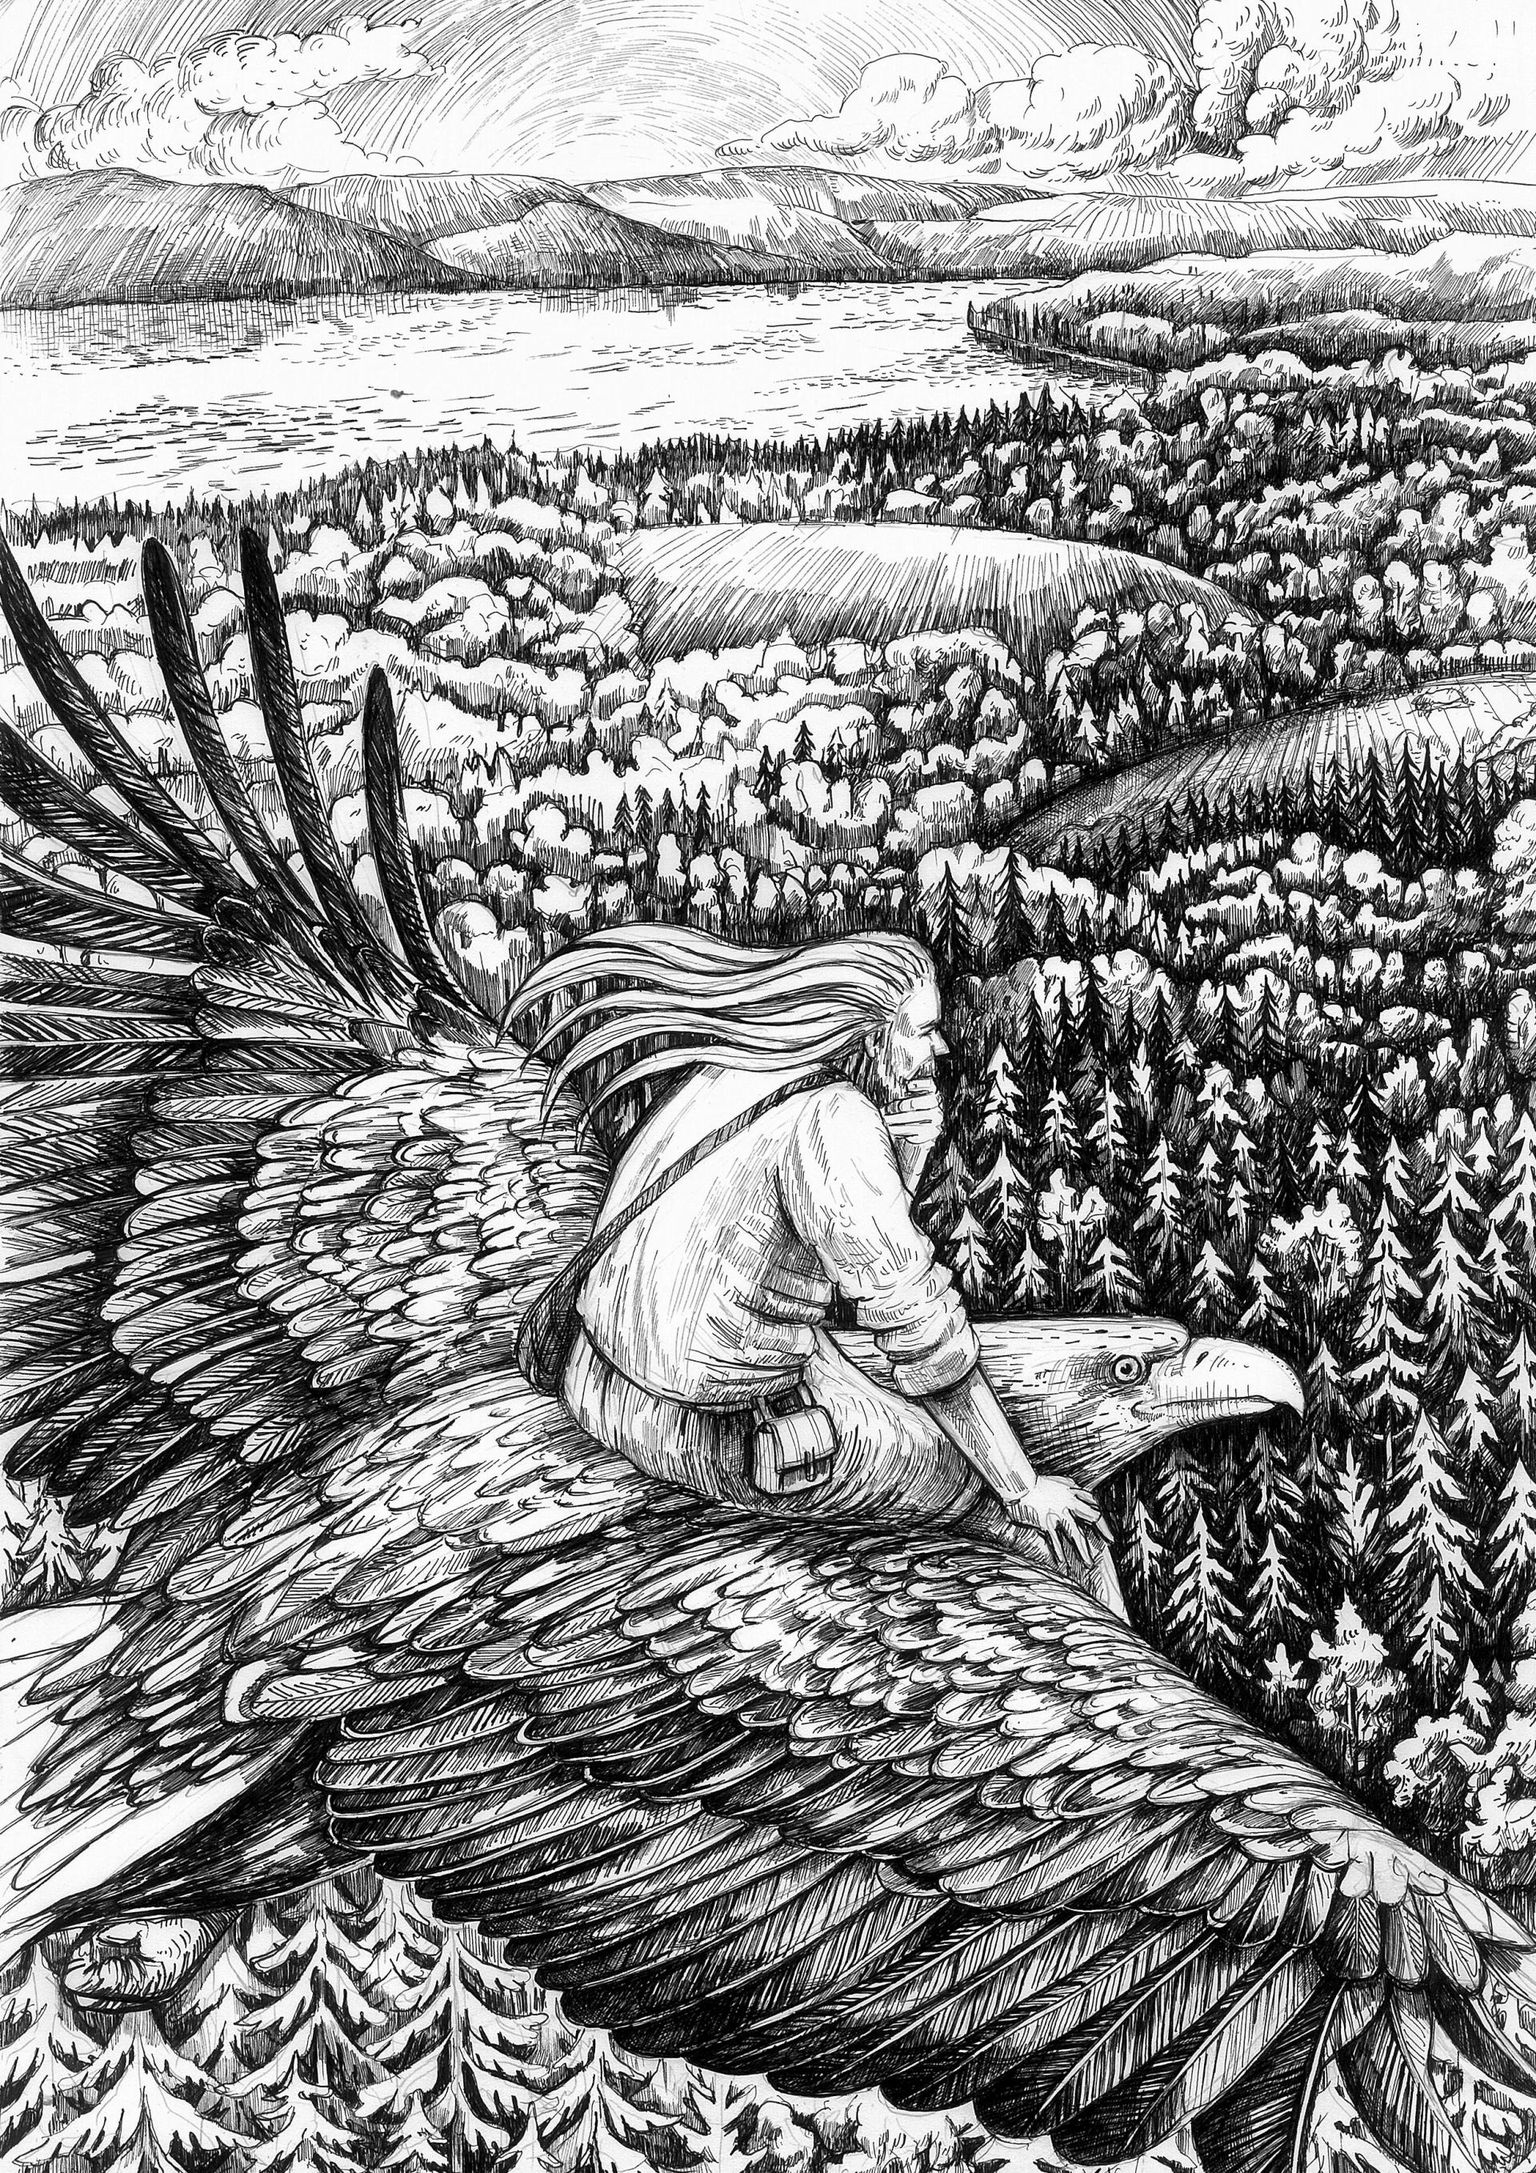 «Kalevipoja» pildikeelt selgitavas raamatus lendab Jevgenia Dudini joonistatud illustratsioonil vana Kalev kotka seljas Viru randa. Pilt illustreerib eepose esimest lugu ning kotkas viitab mõtlemisele. Vaid mõttel on jõud, et tõusta kõrgustesse.  Jevgenia Tudin